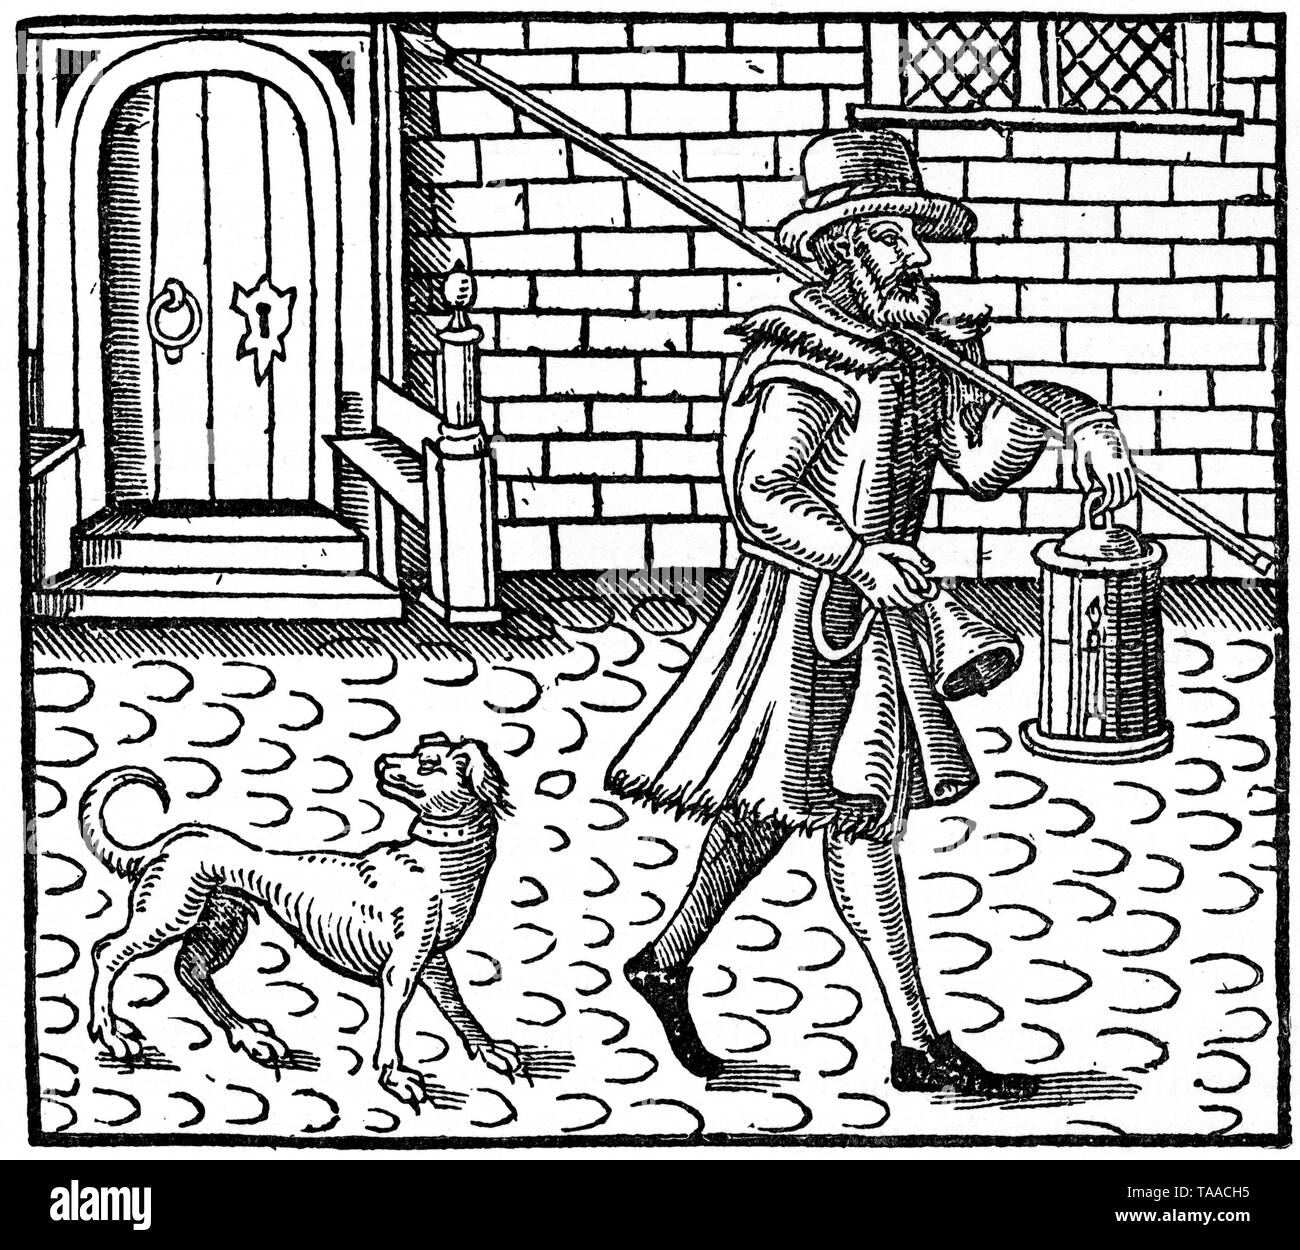 Le chasseur londonien du début du XVIIe siècle. Par Thomas Dekker (1572-1632). Frontispice de 'The Bellman of London', par Thomas Dekker (1572-1632), 1616. Imprimé par beurre de Nathaniel, 1608. Banque D'Images